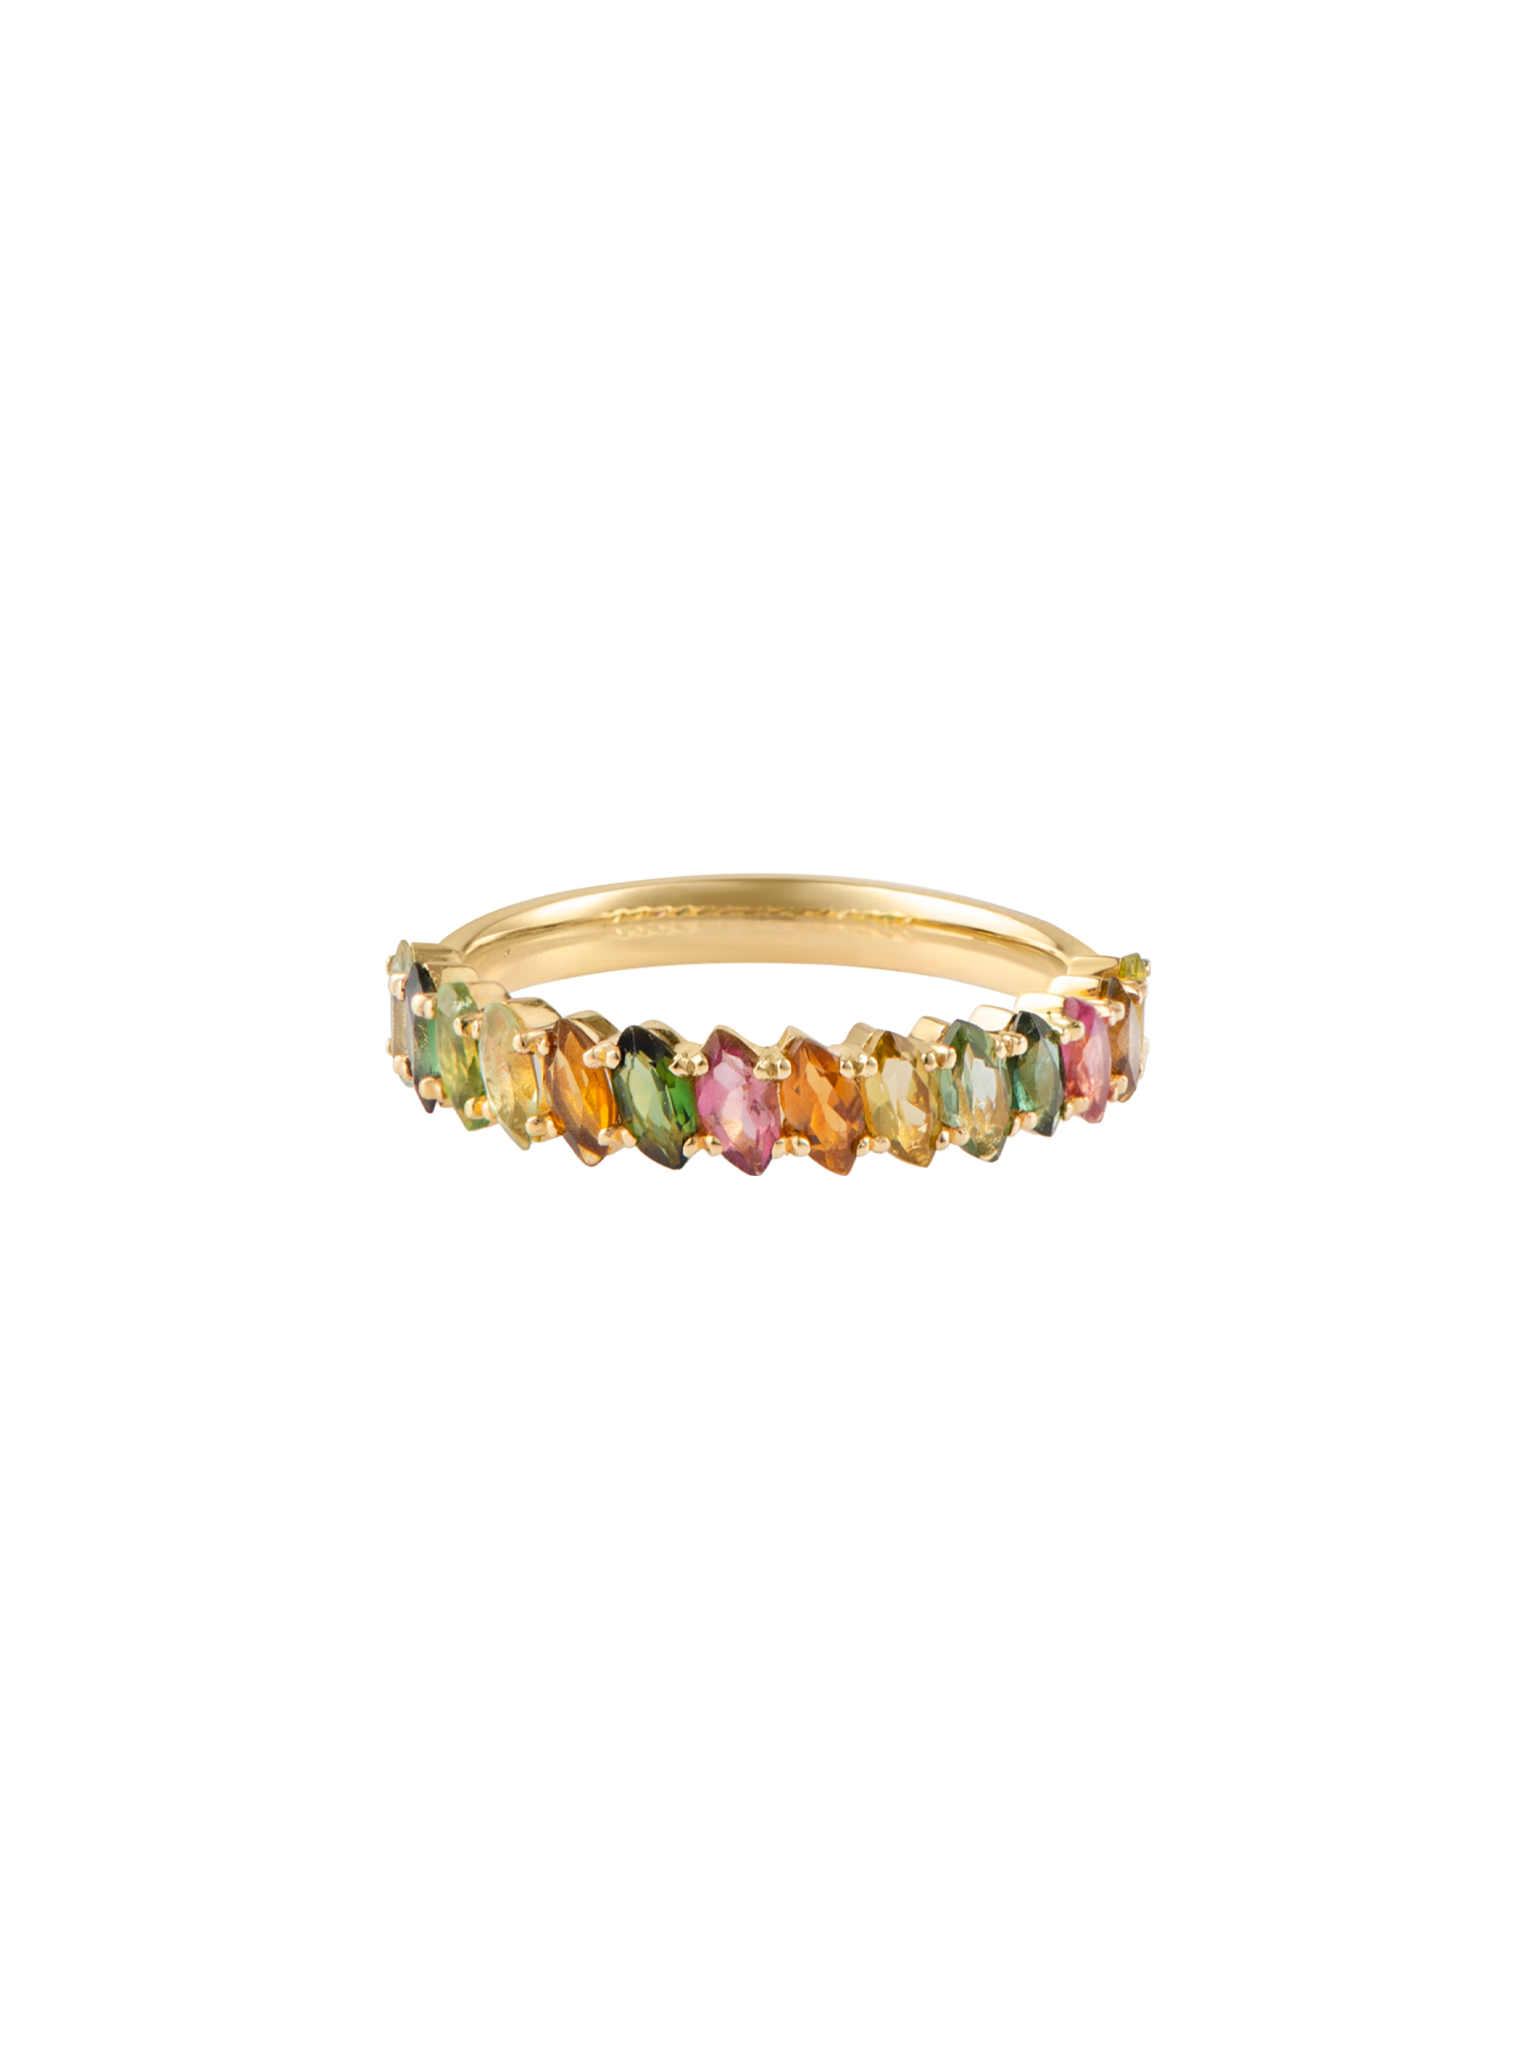 Multi colored tourmaline ring 